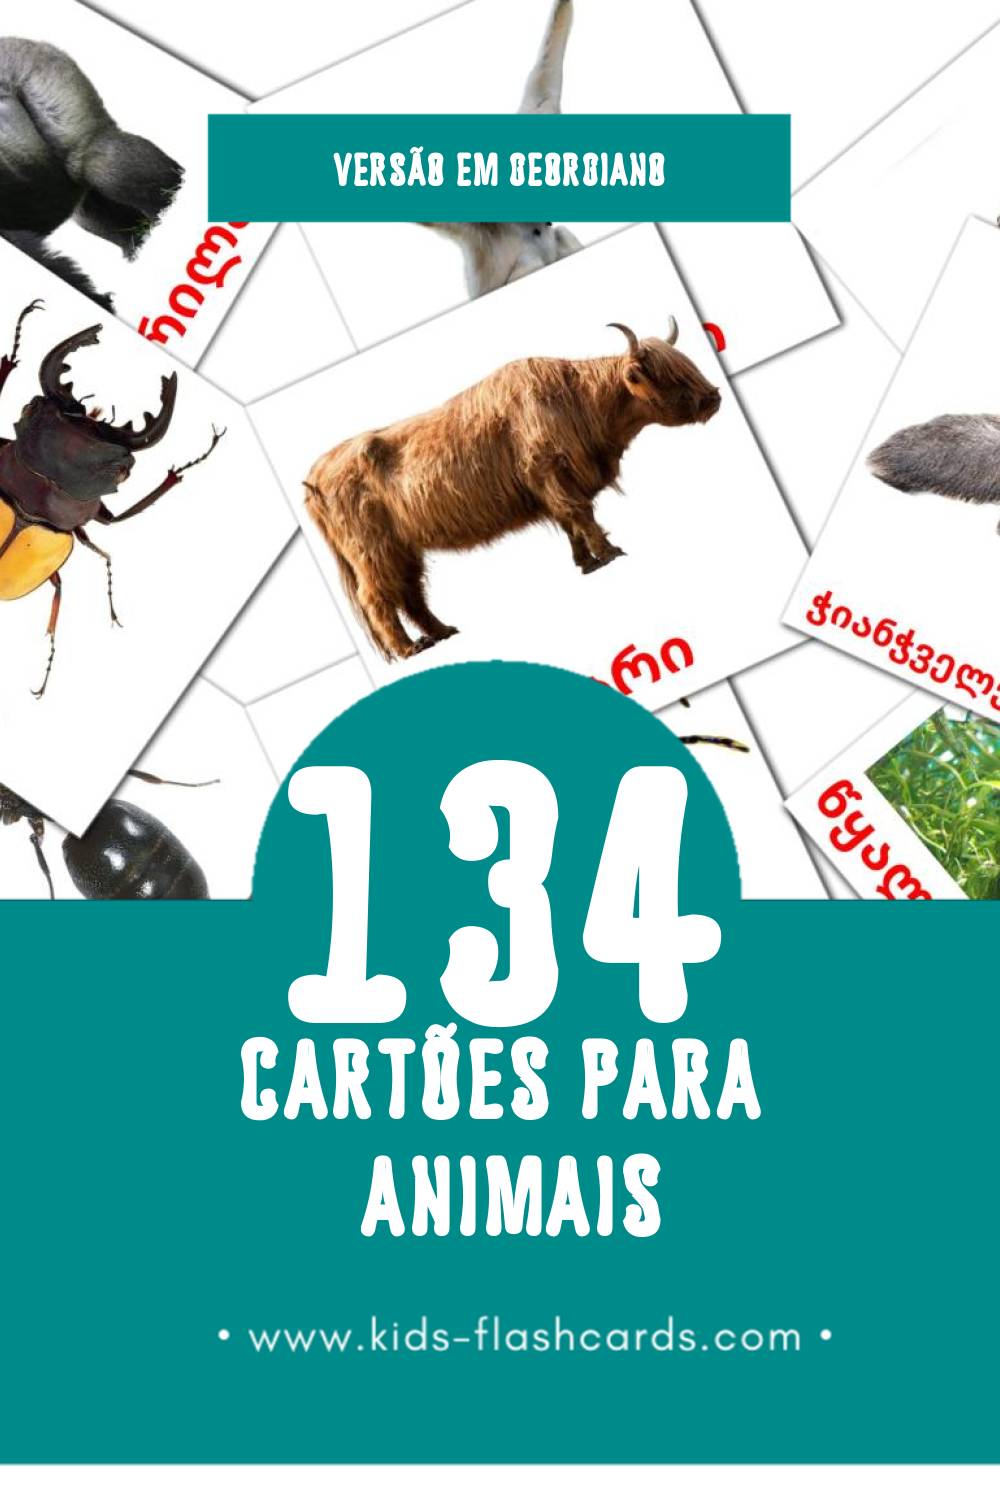 Flashcards de ცხოველები Visuais para Toddlers (134 cartões em Georgiano)